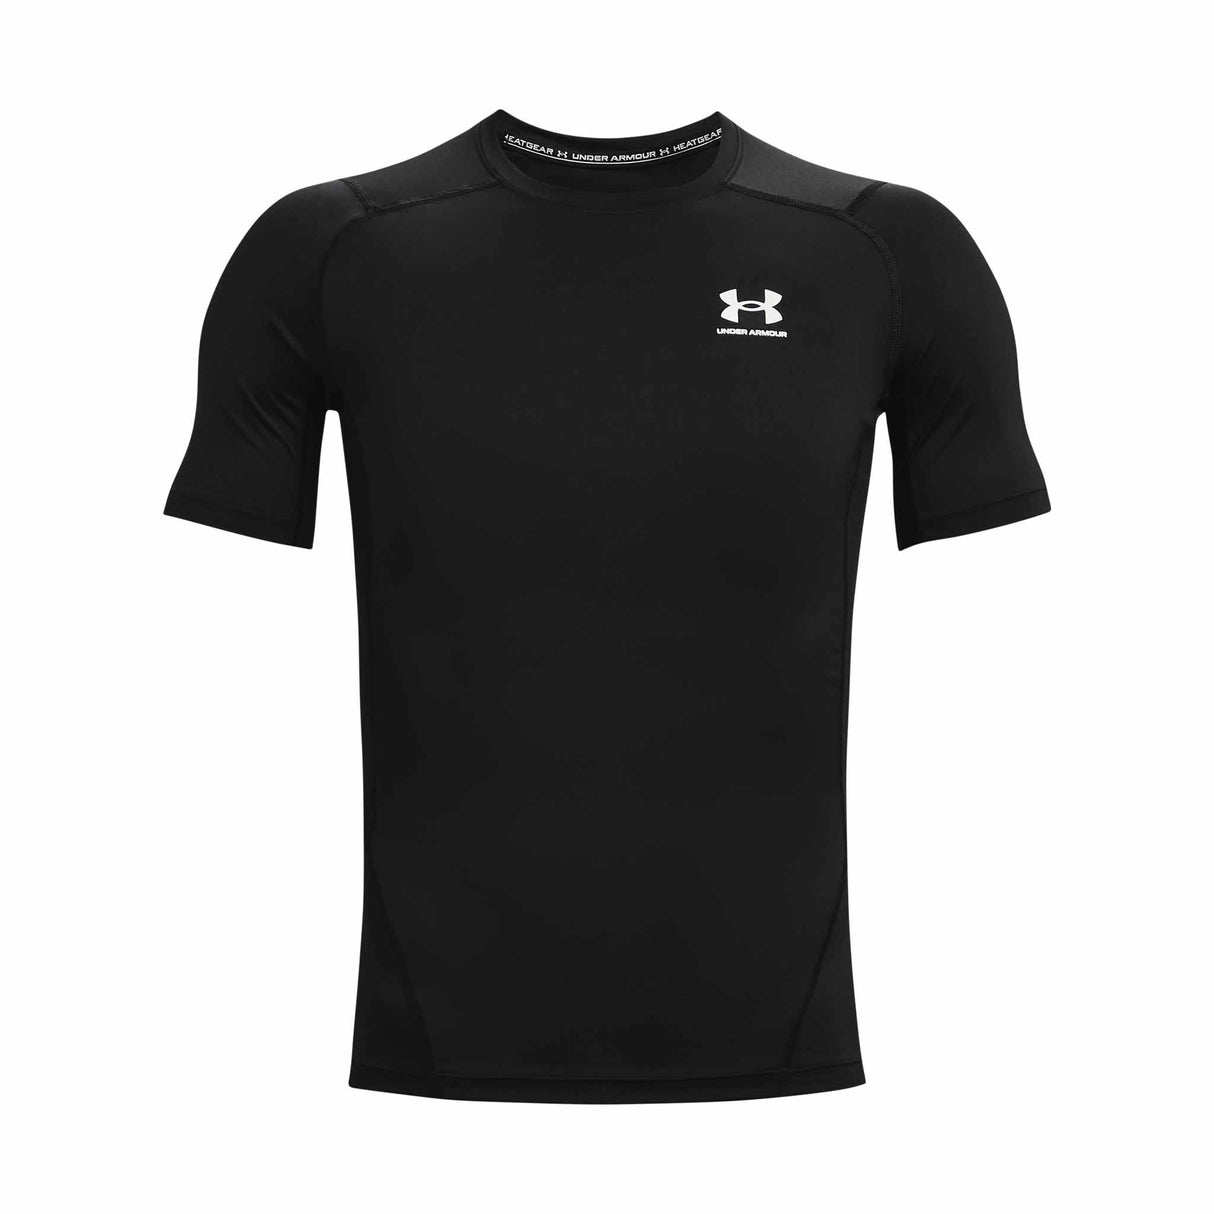 UA HeatGear Armour - T-shirt à manches courtes homme face- noir / blanc